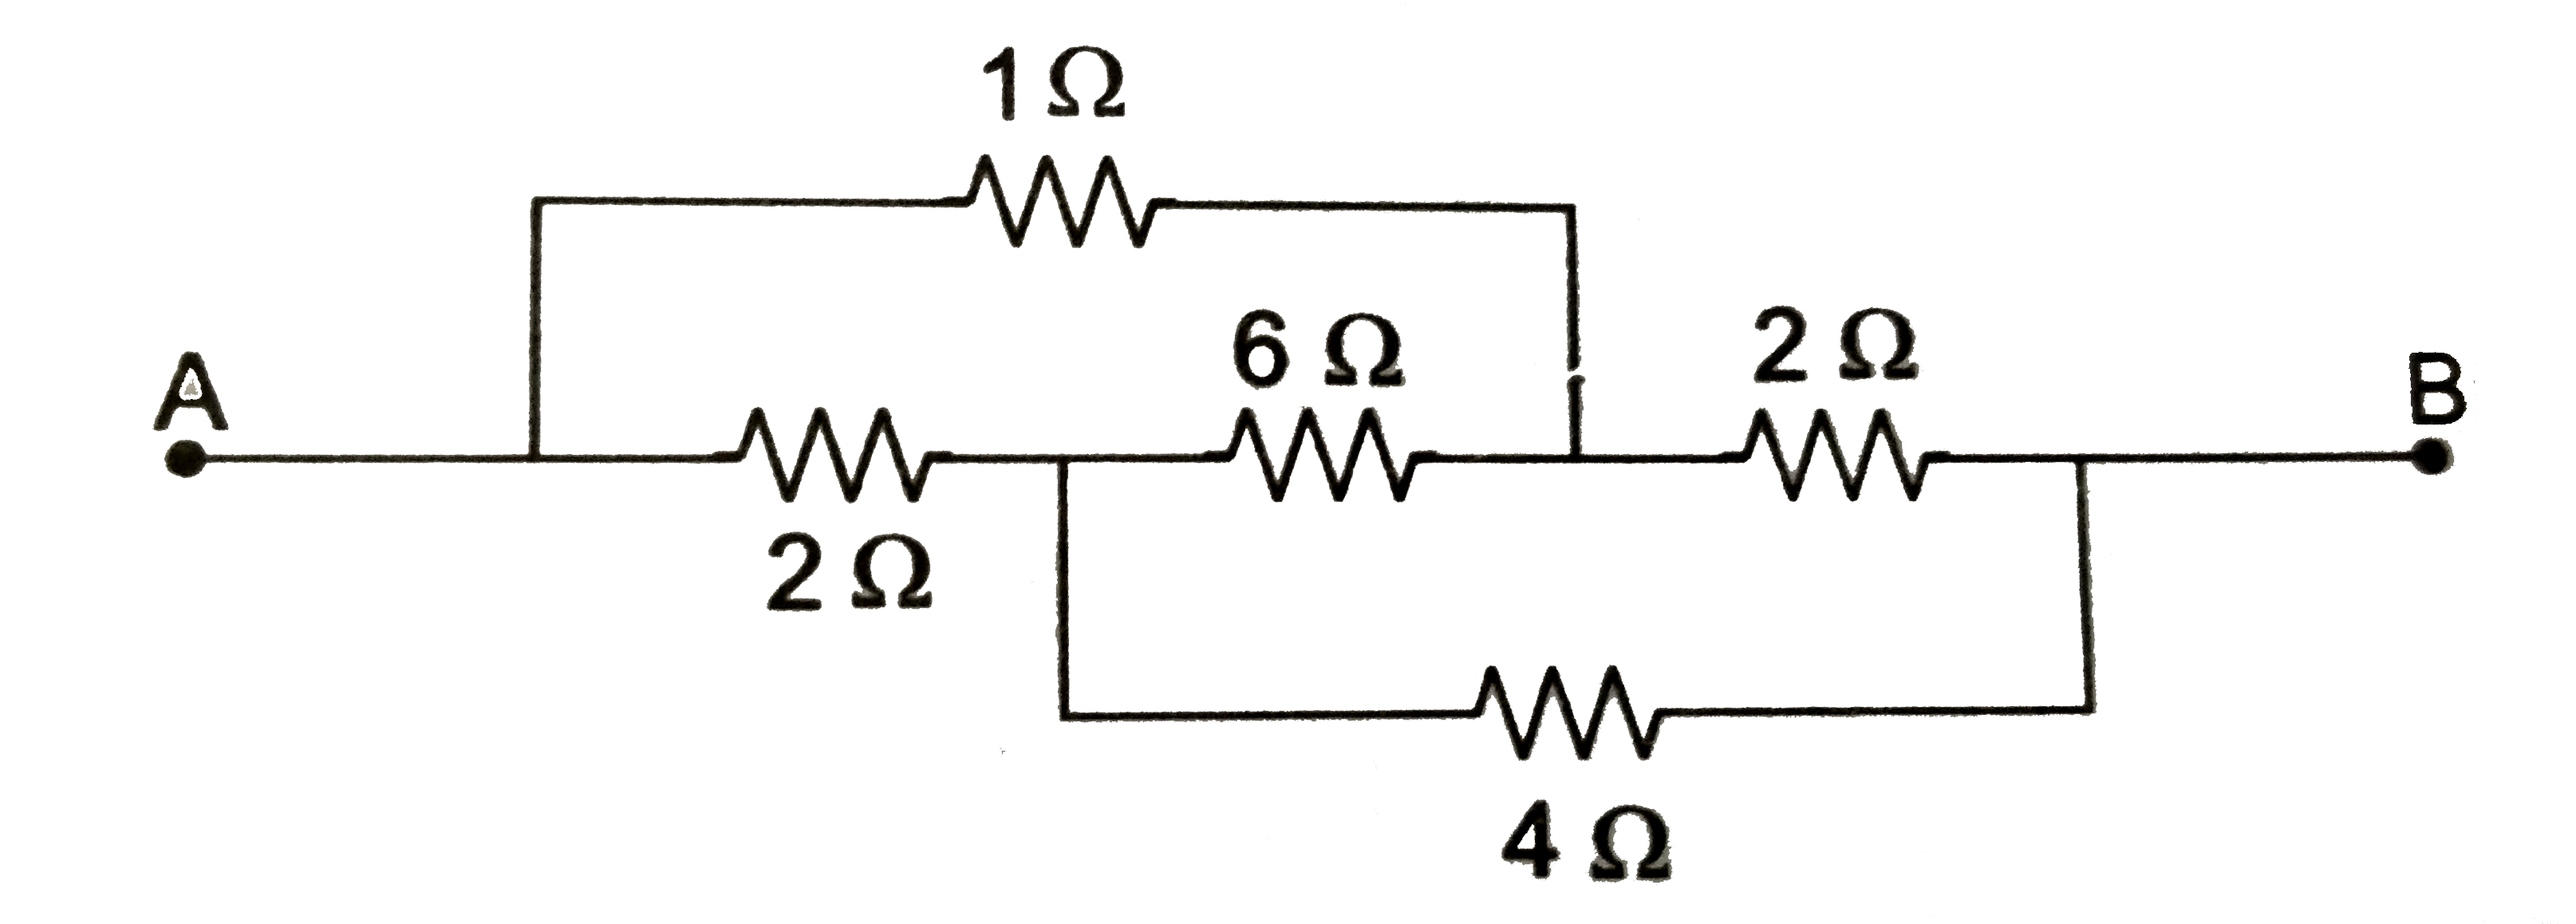 A एव B बिन्दुओ के बीच नियत विभवांतर रखा गया है। A और B के बीच तुल्य प्रतिरोध R है।